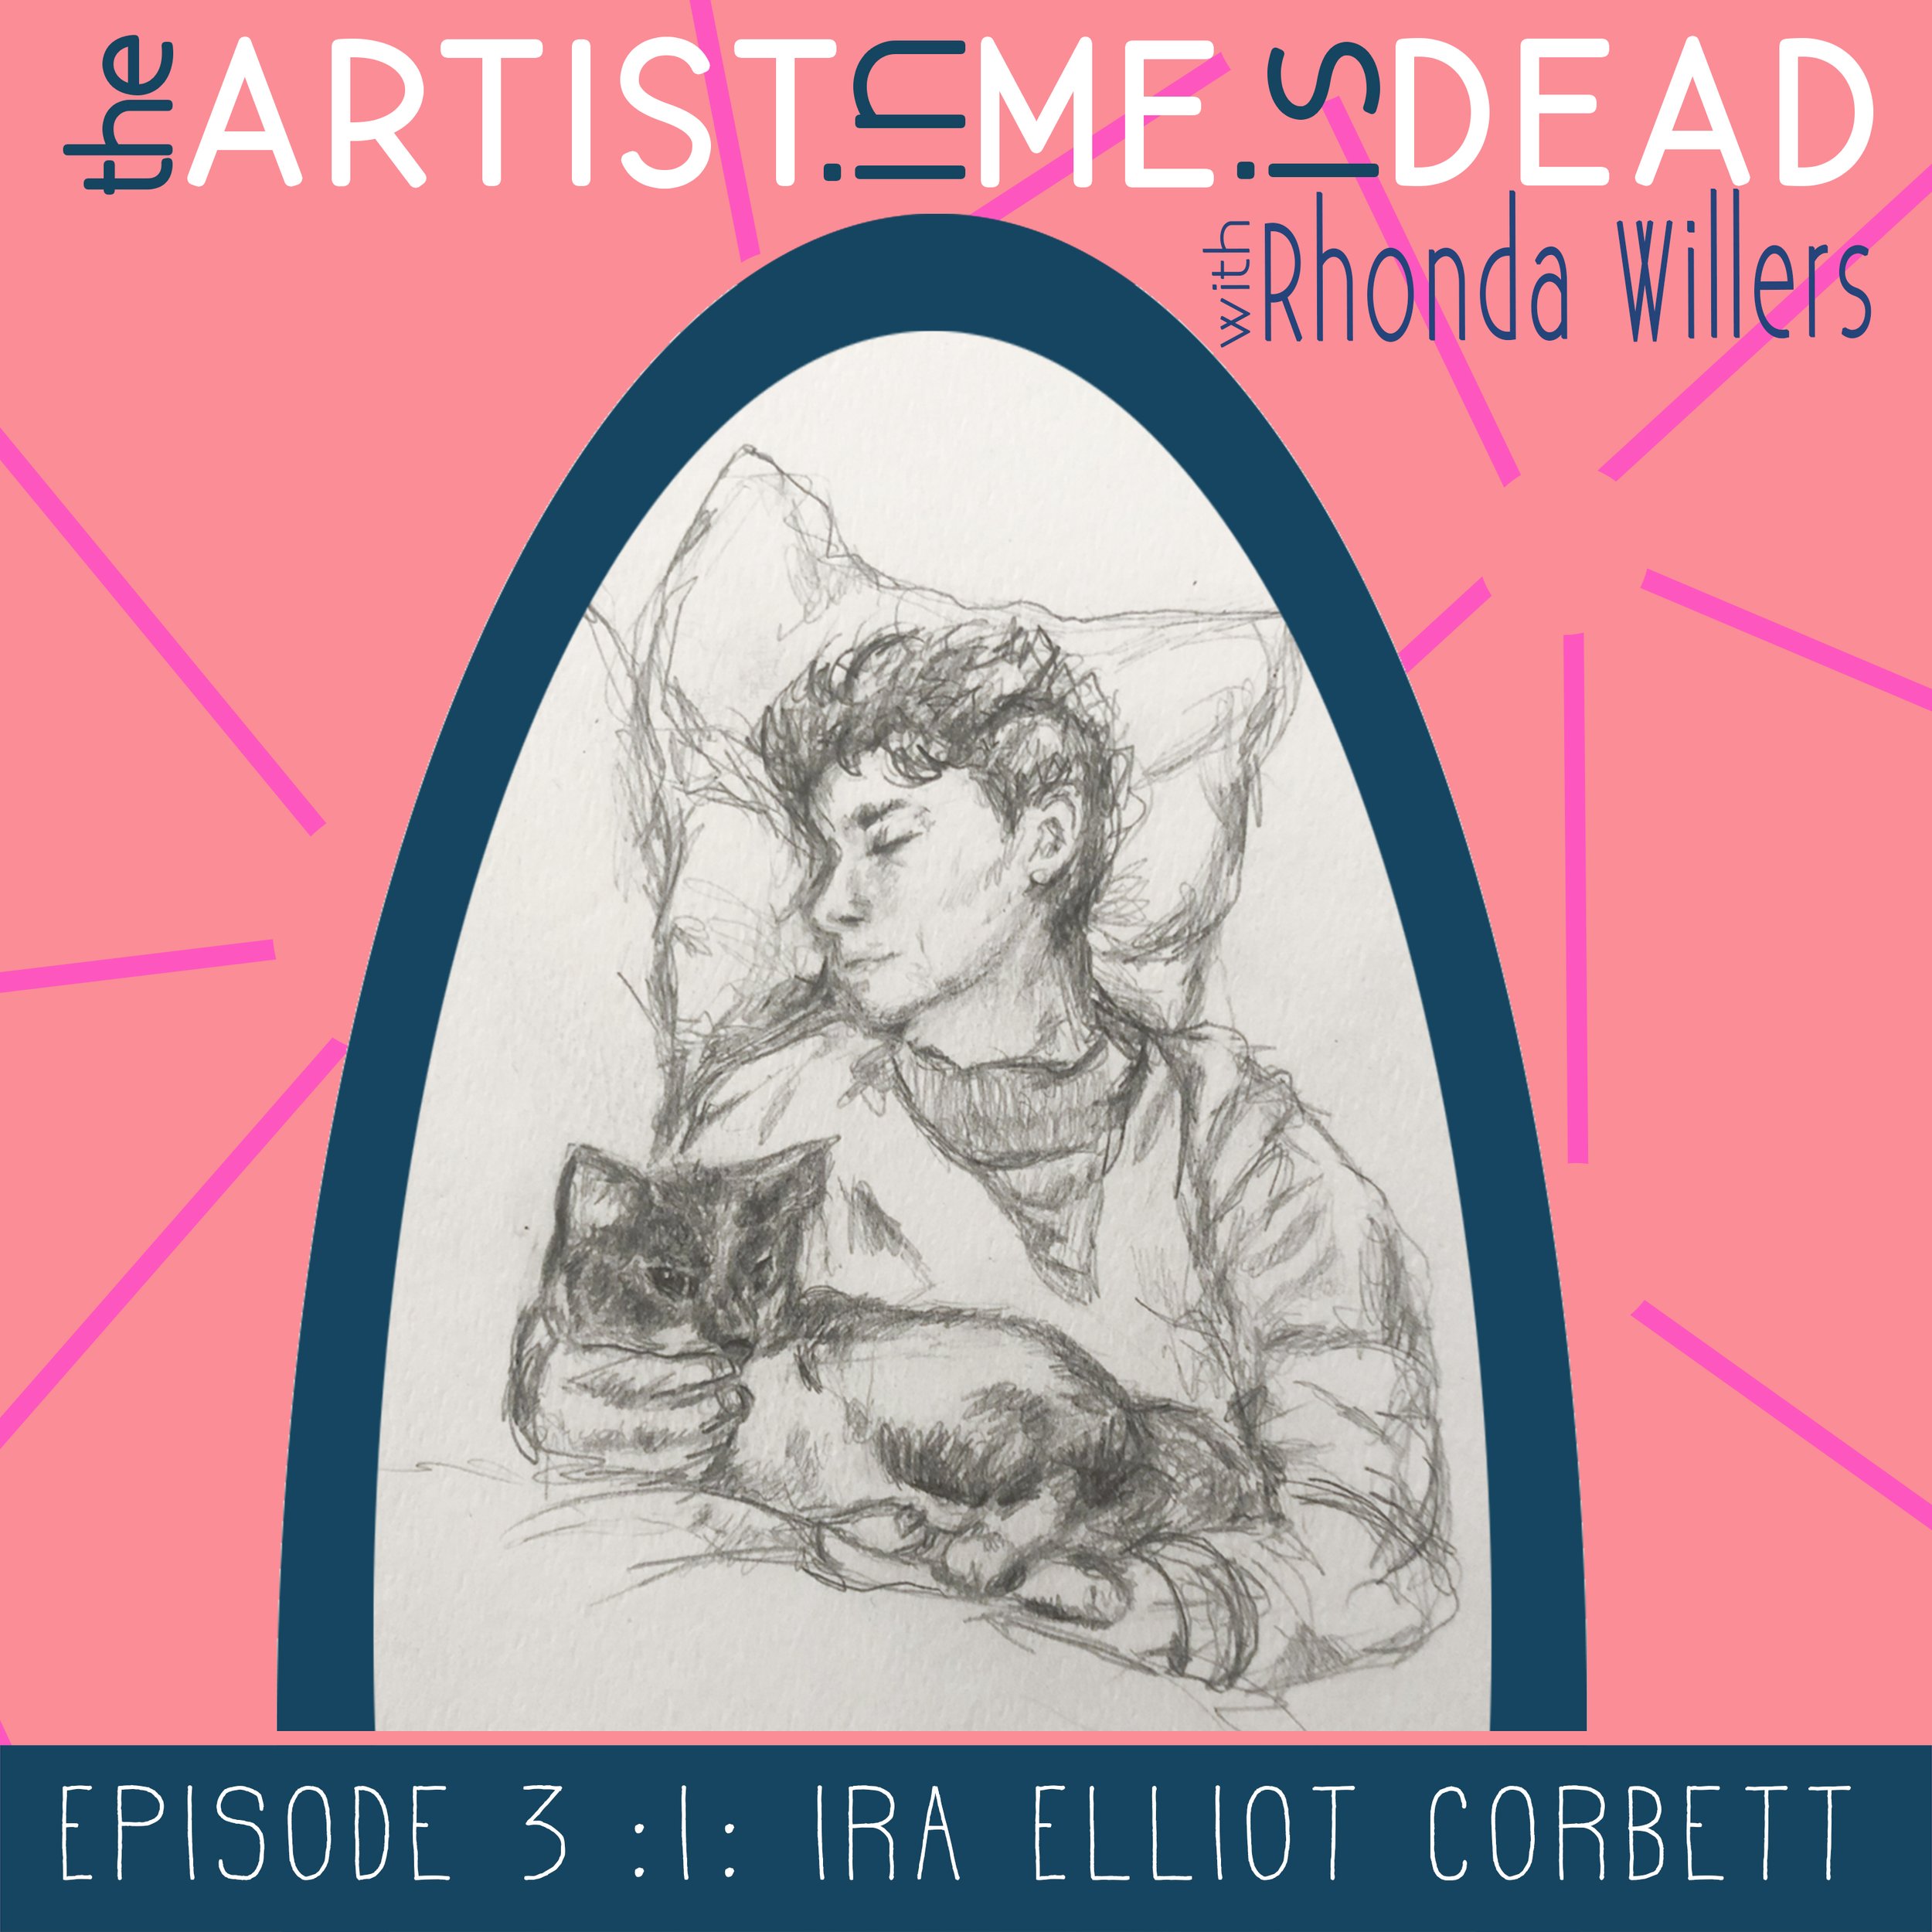 The-Artist-In-Me-Is-Dead_season1_episode_3_Ira-Elliot-Corbett.jpg